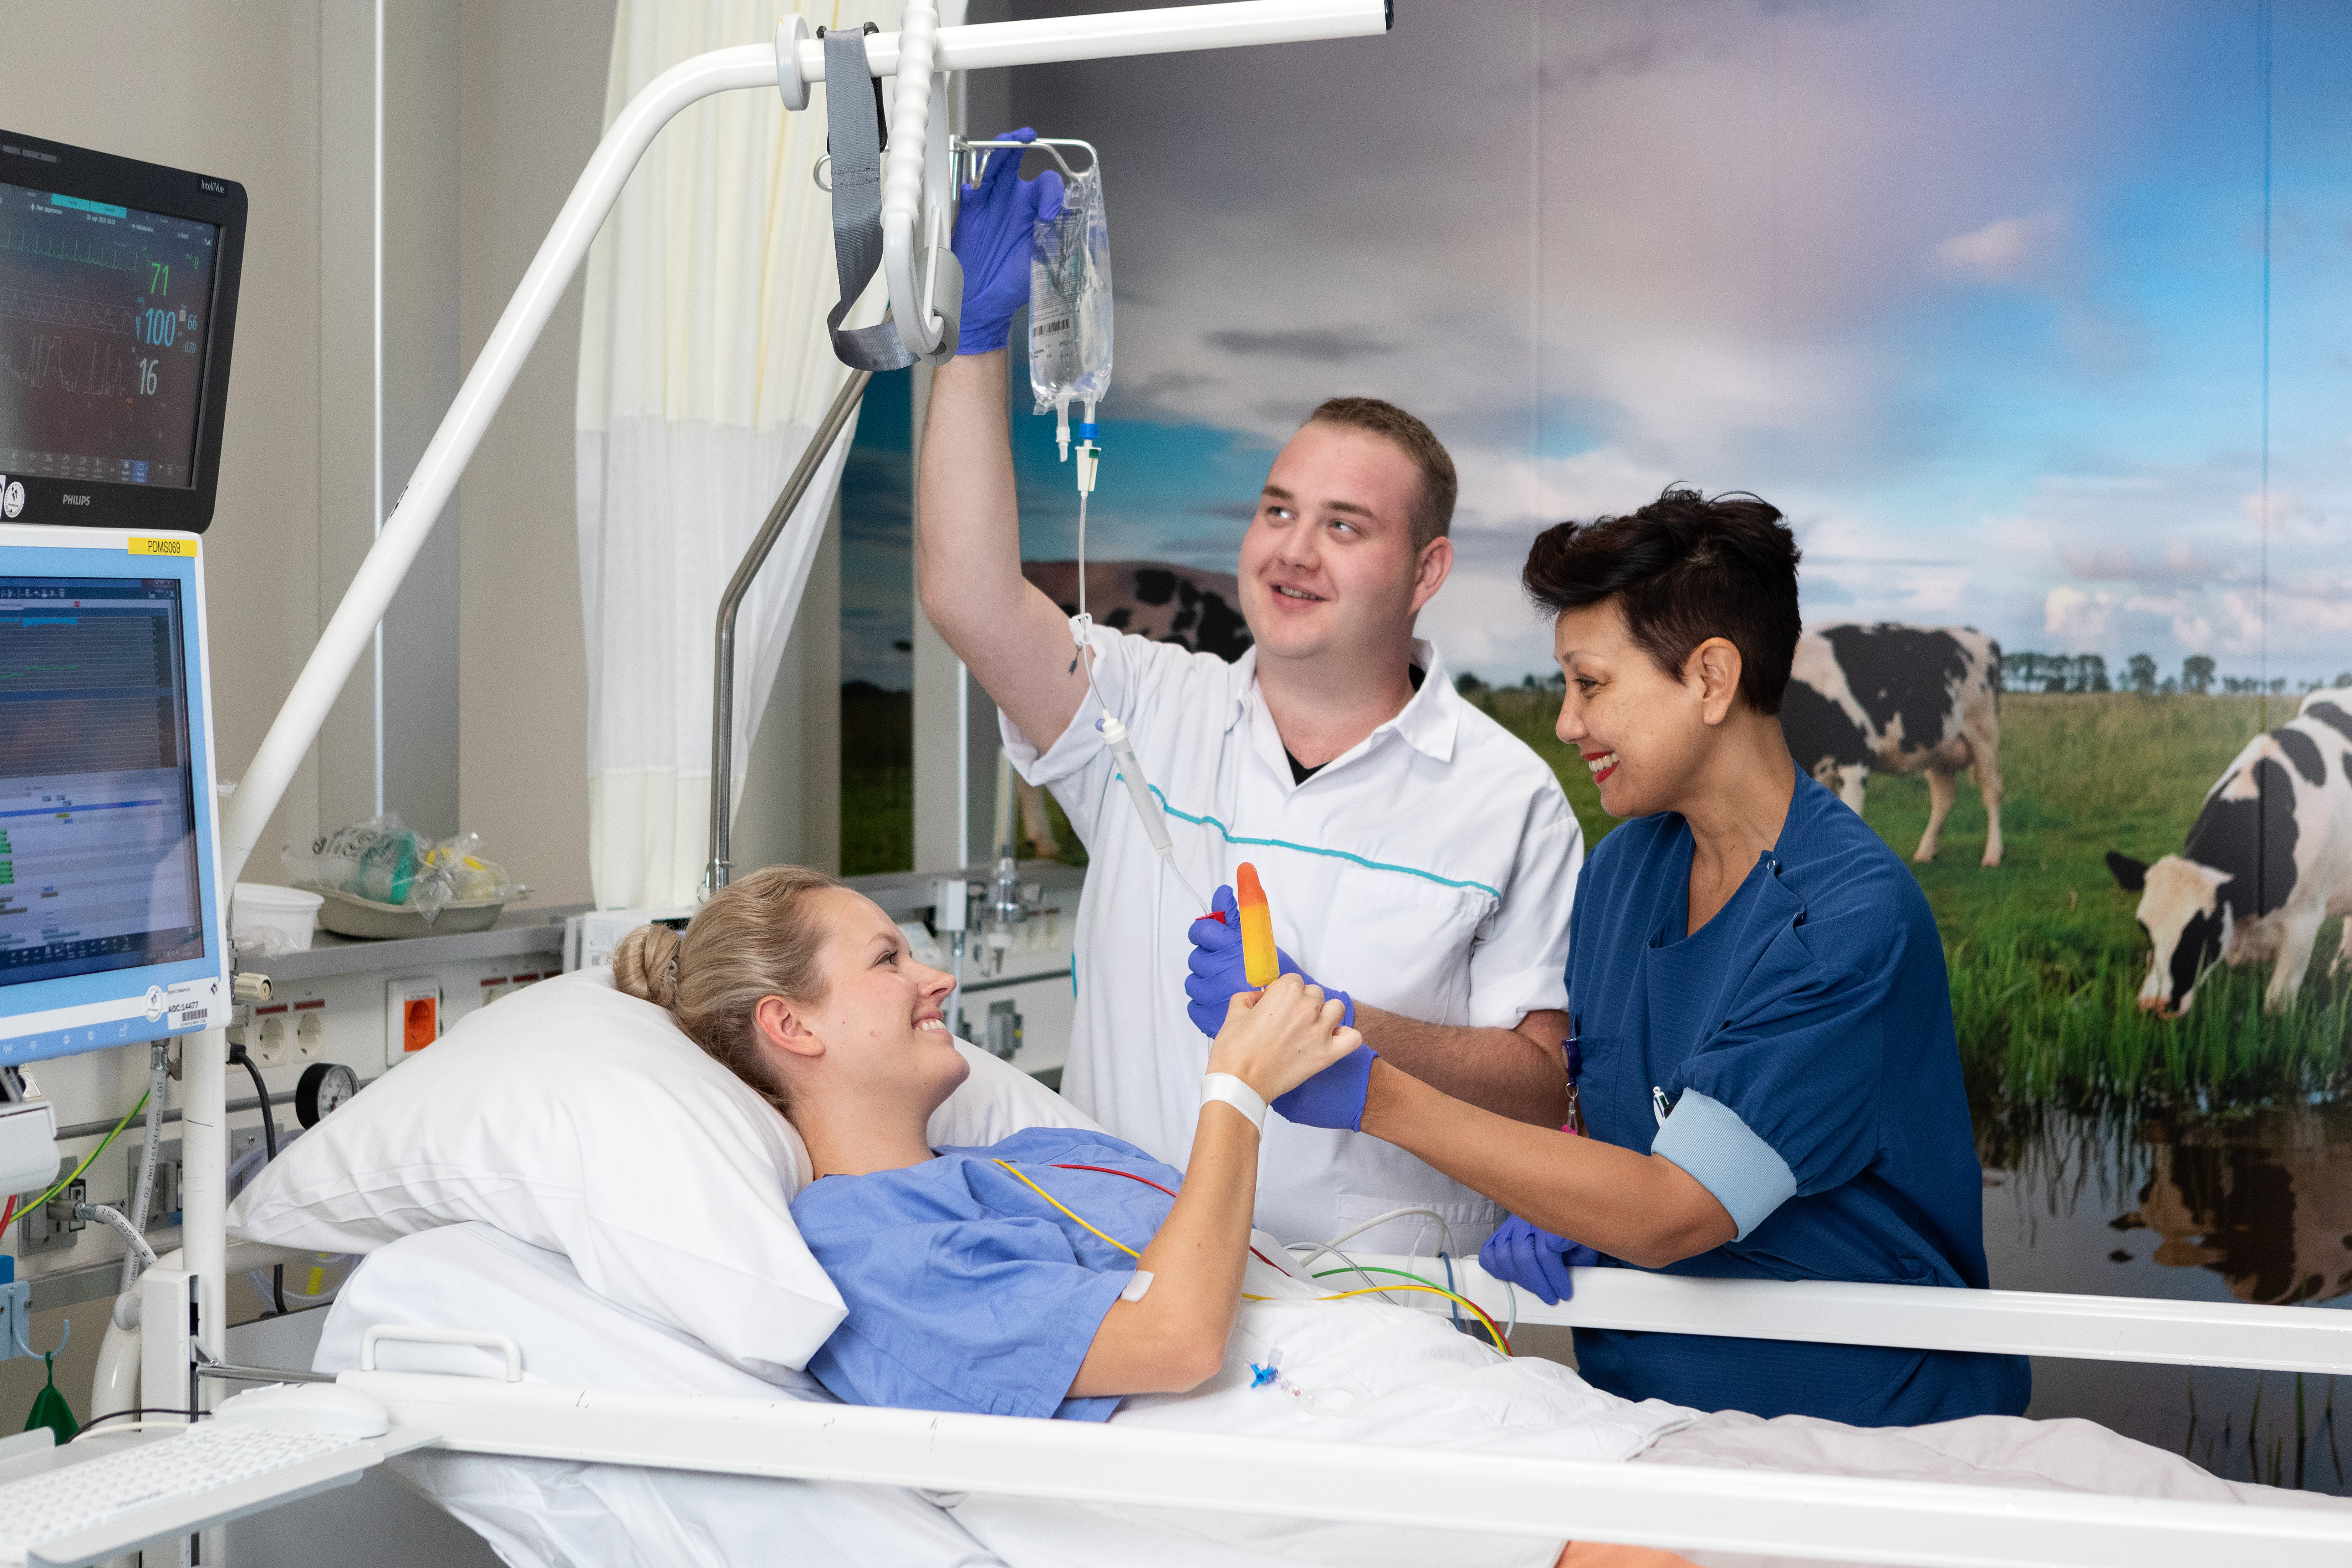 Patiënt in bed krijgt ijsje van twee verpleegkundigen.